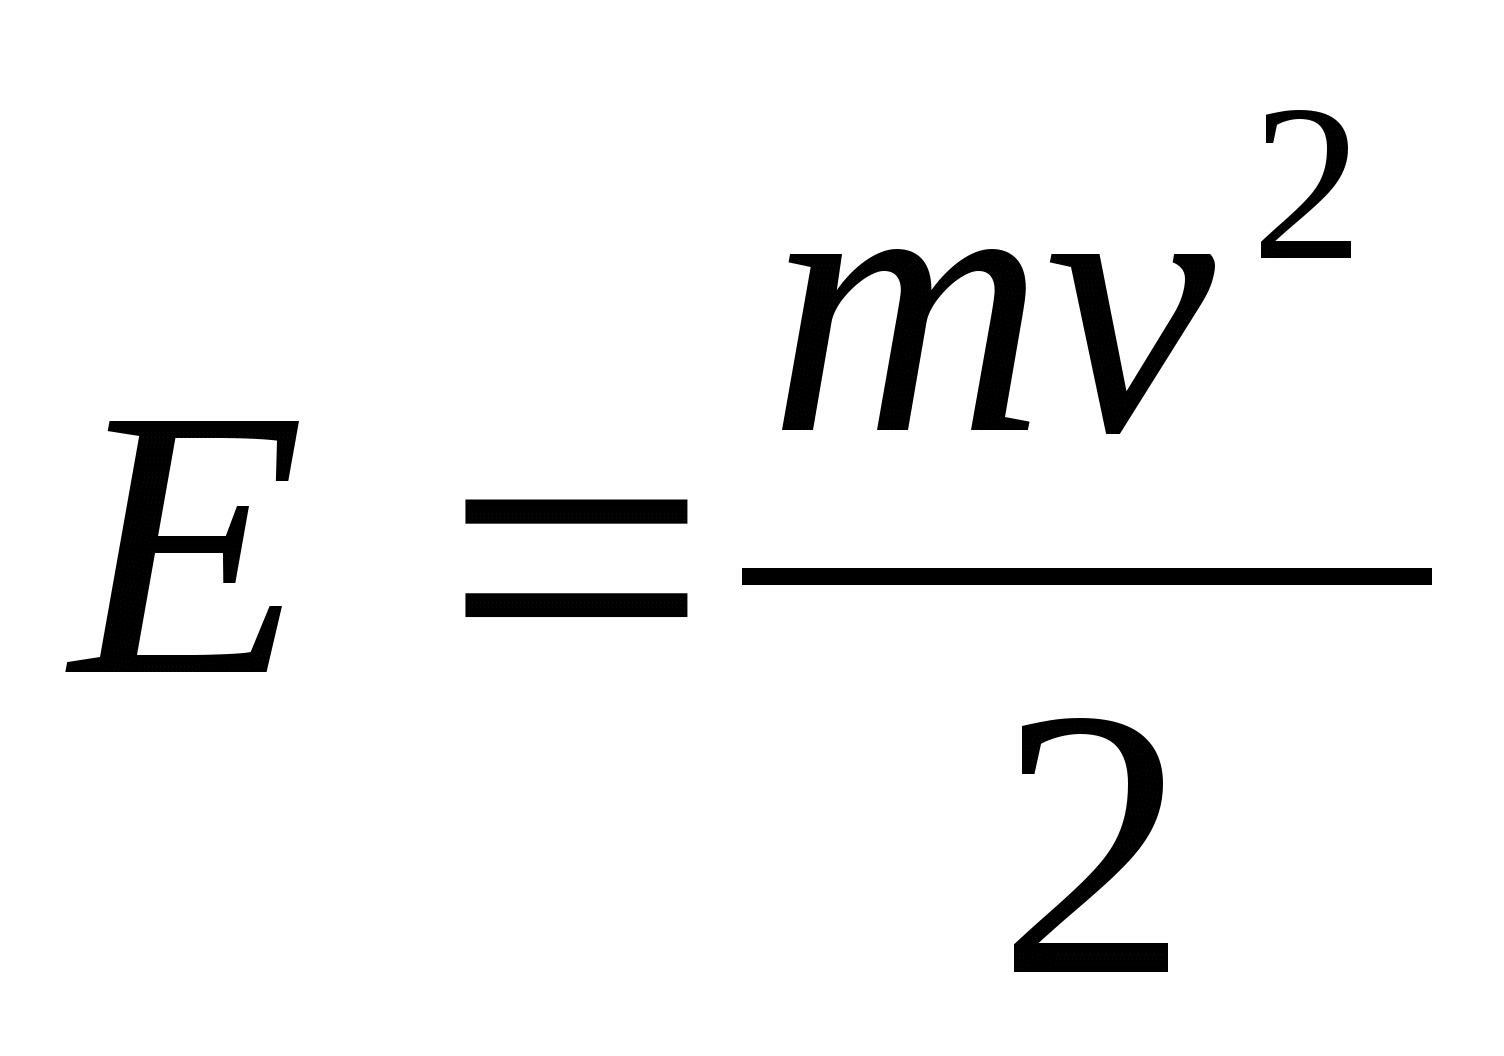 Формула кинетической энергии через массу